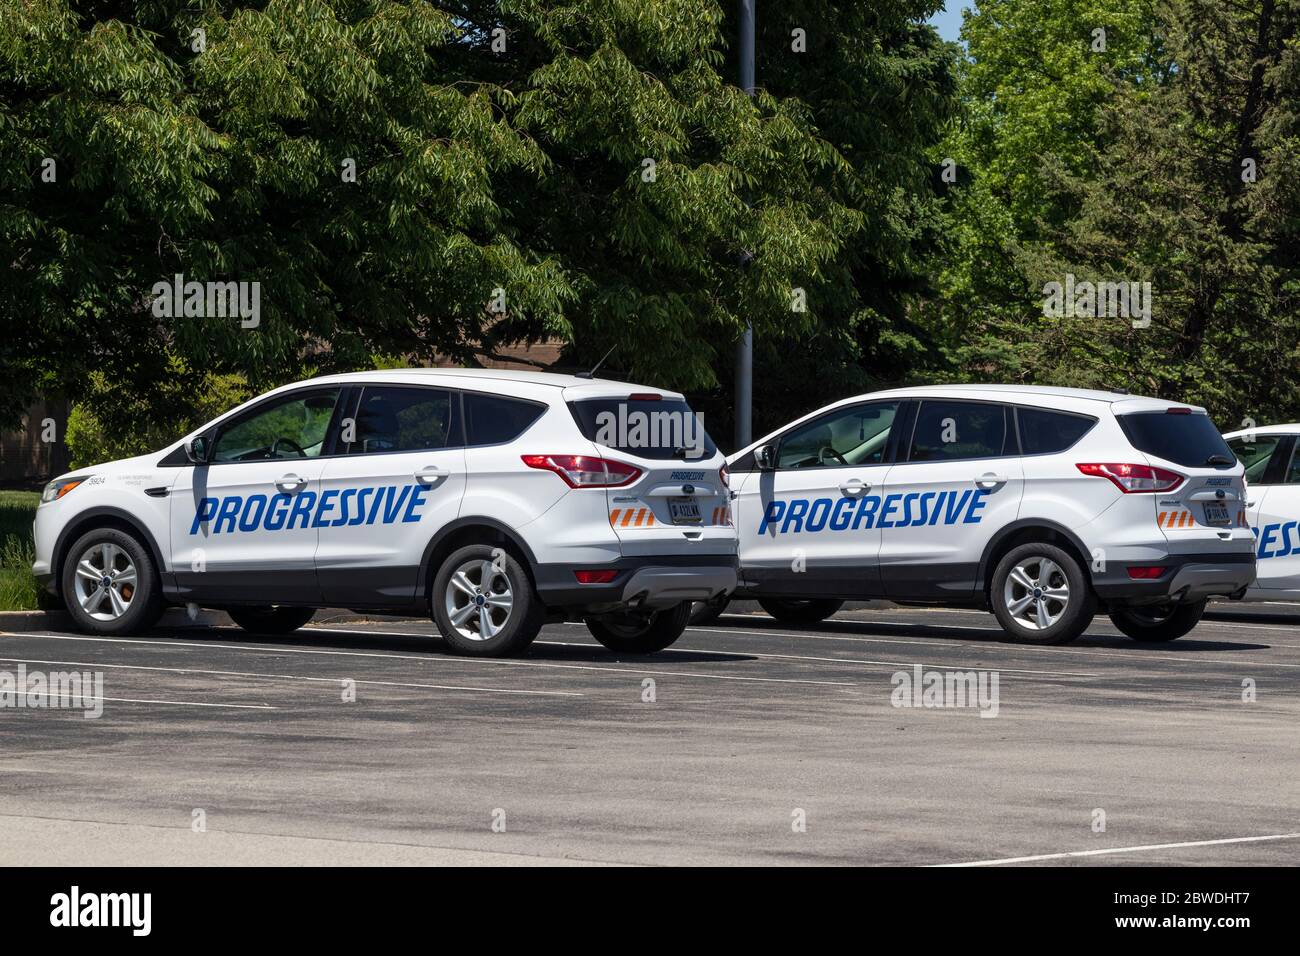 Indianapolis - circa Mai 2020: Progressive Versicherung Ansprüche Fahrzeuge. Progressive versichert Motorräder, Boote, Wohnmobile und Nutzfahrzeuge. Stockfoto